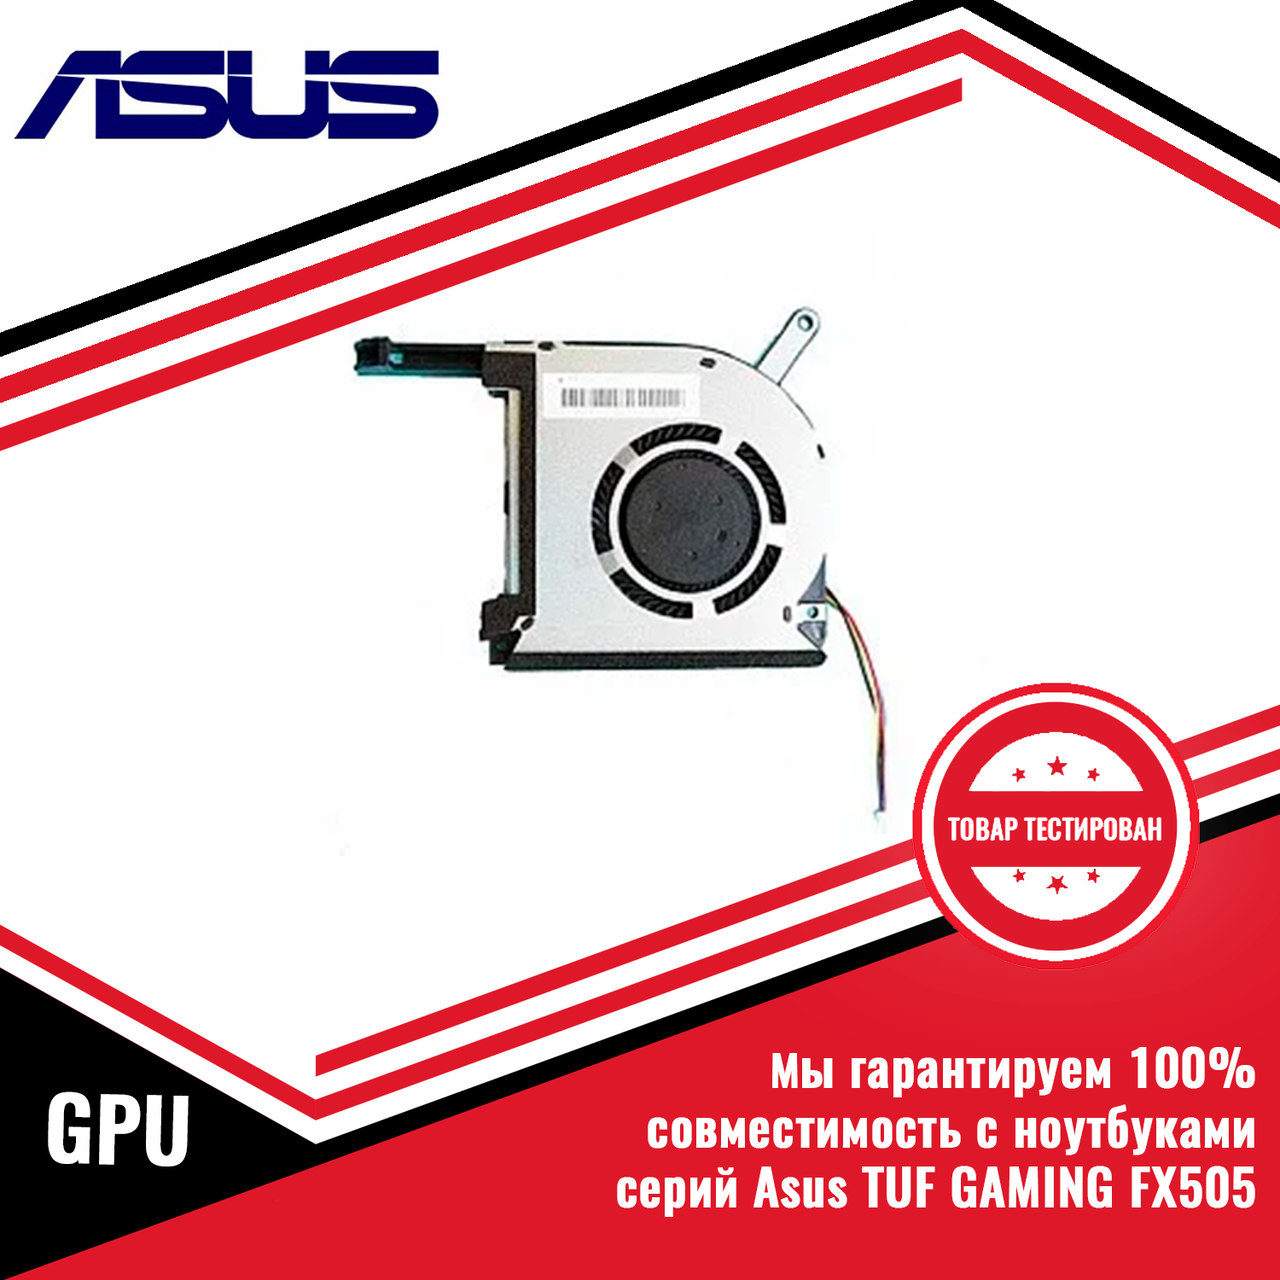 Оригинальный кулер (вентилятор) Asus FX505, GPU